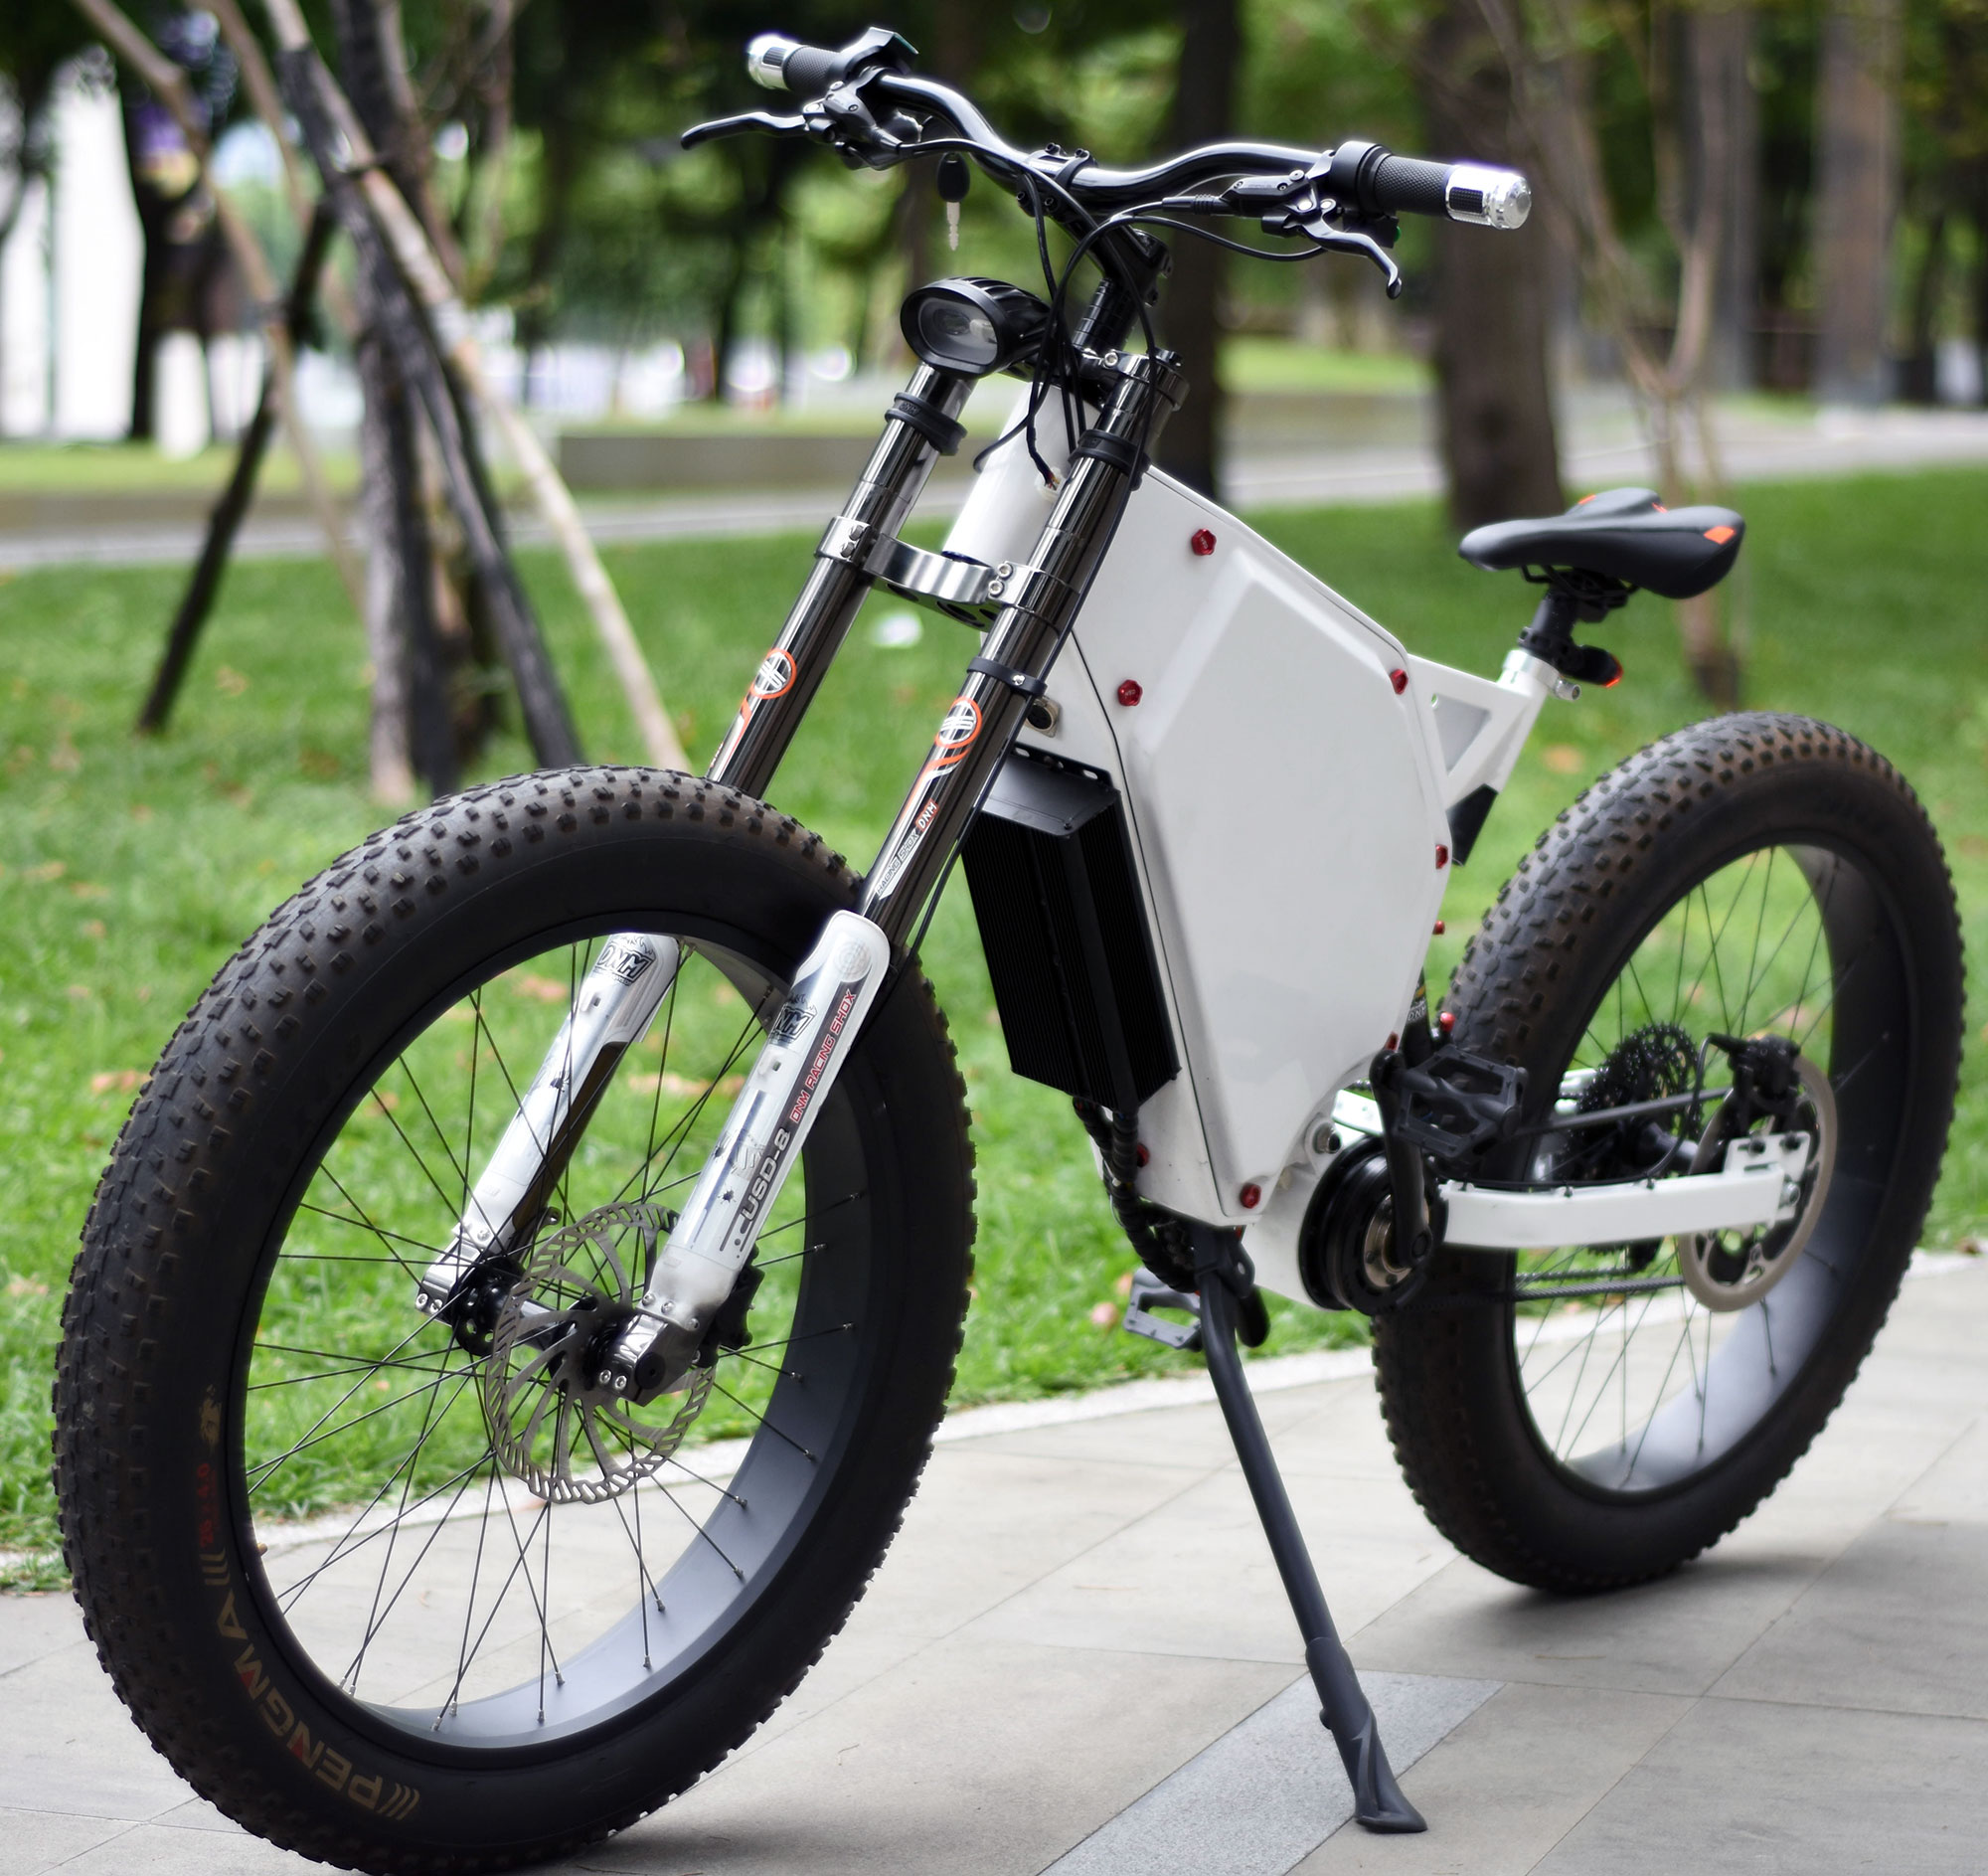 2.4KW~6kw enduro e-bike coaxial Gates Carbon drive